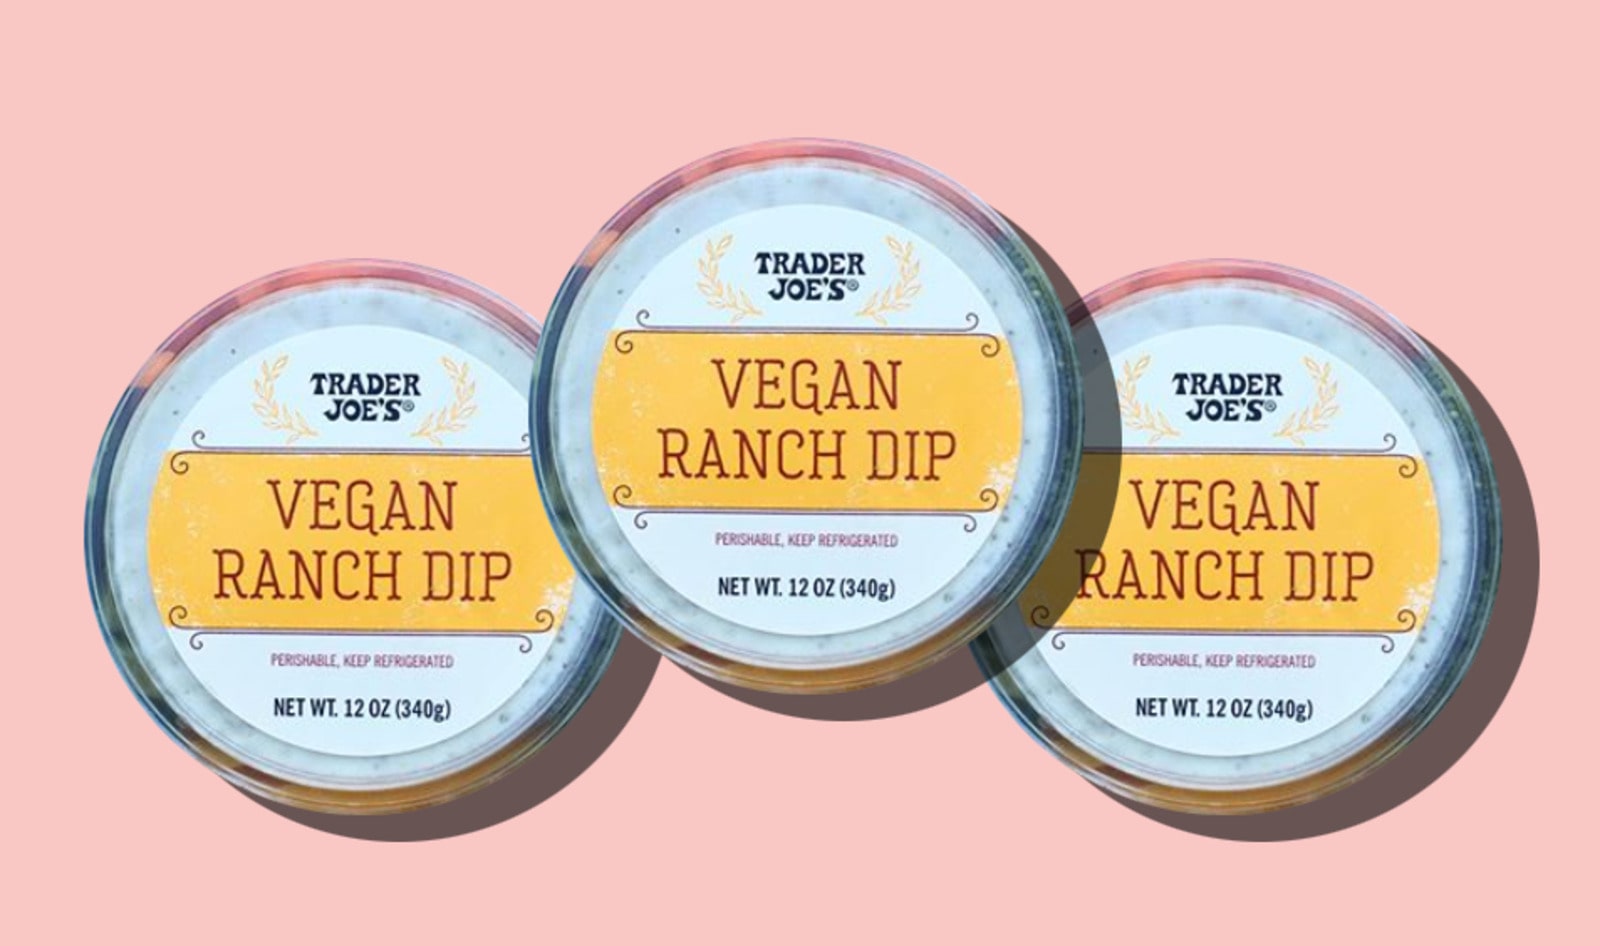 Vegan Ranch Debuts at Trader Joe’s